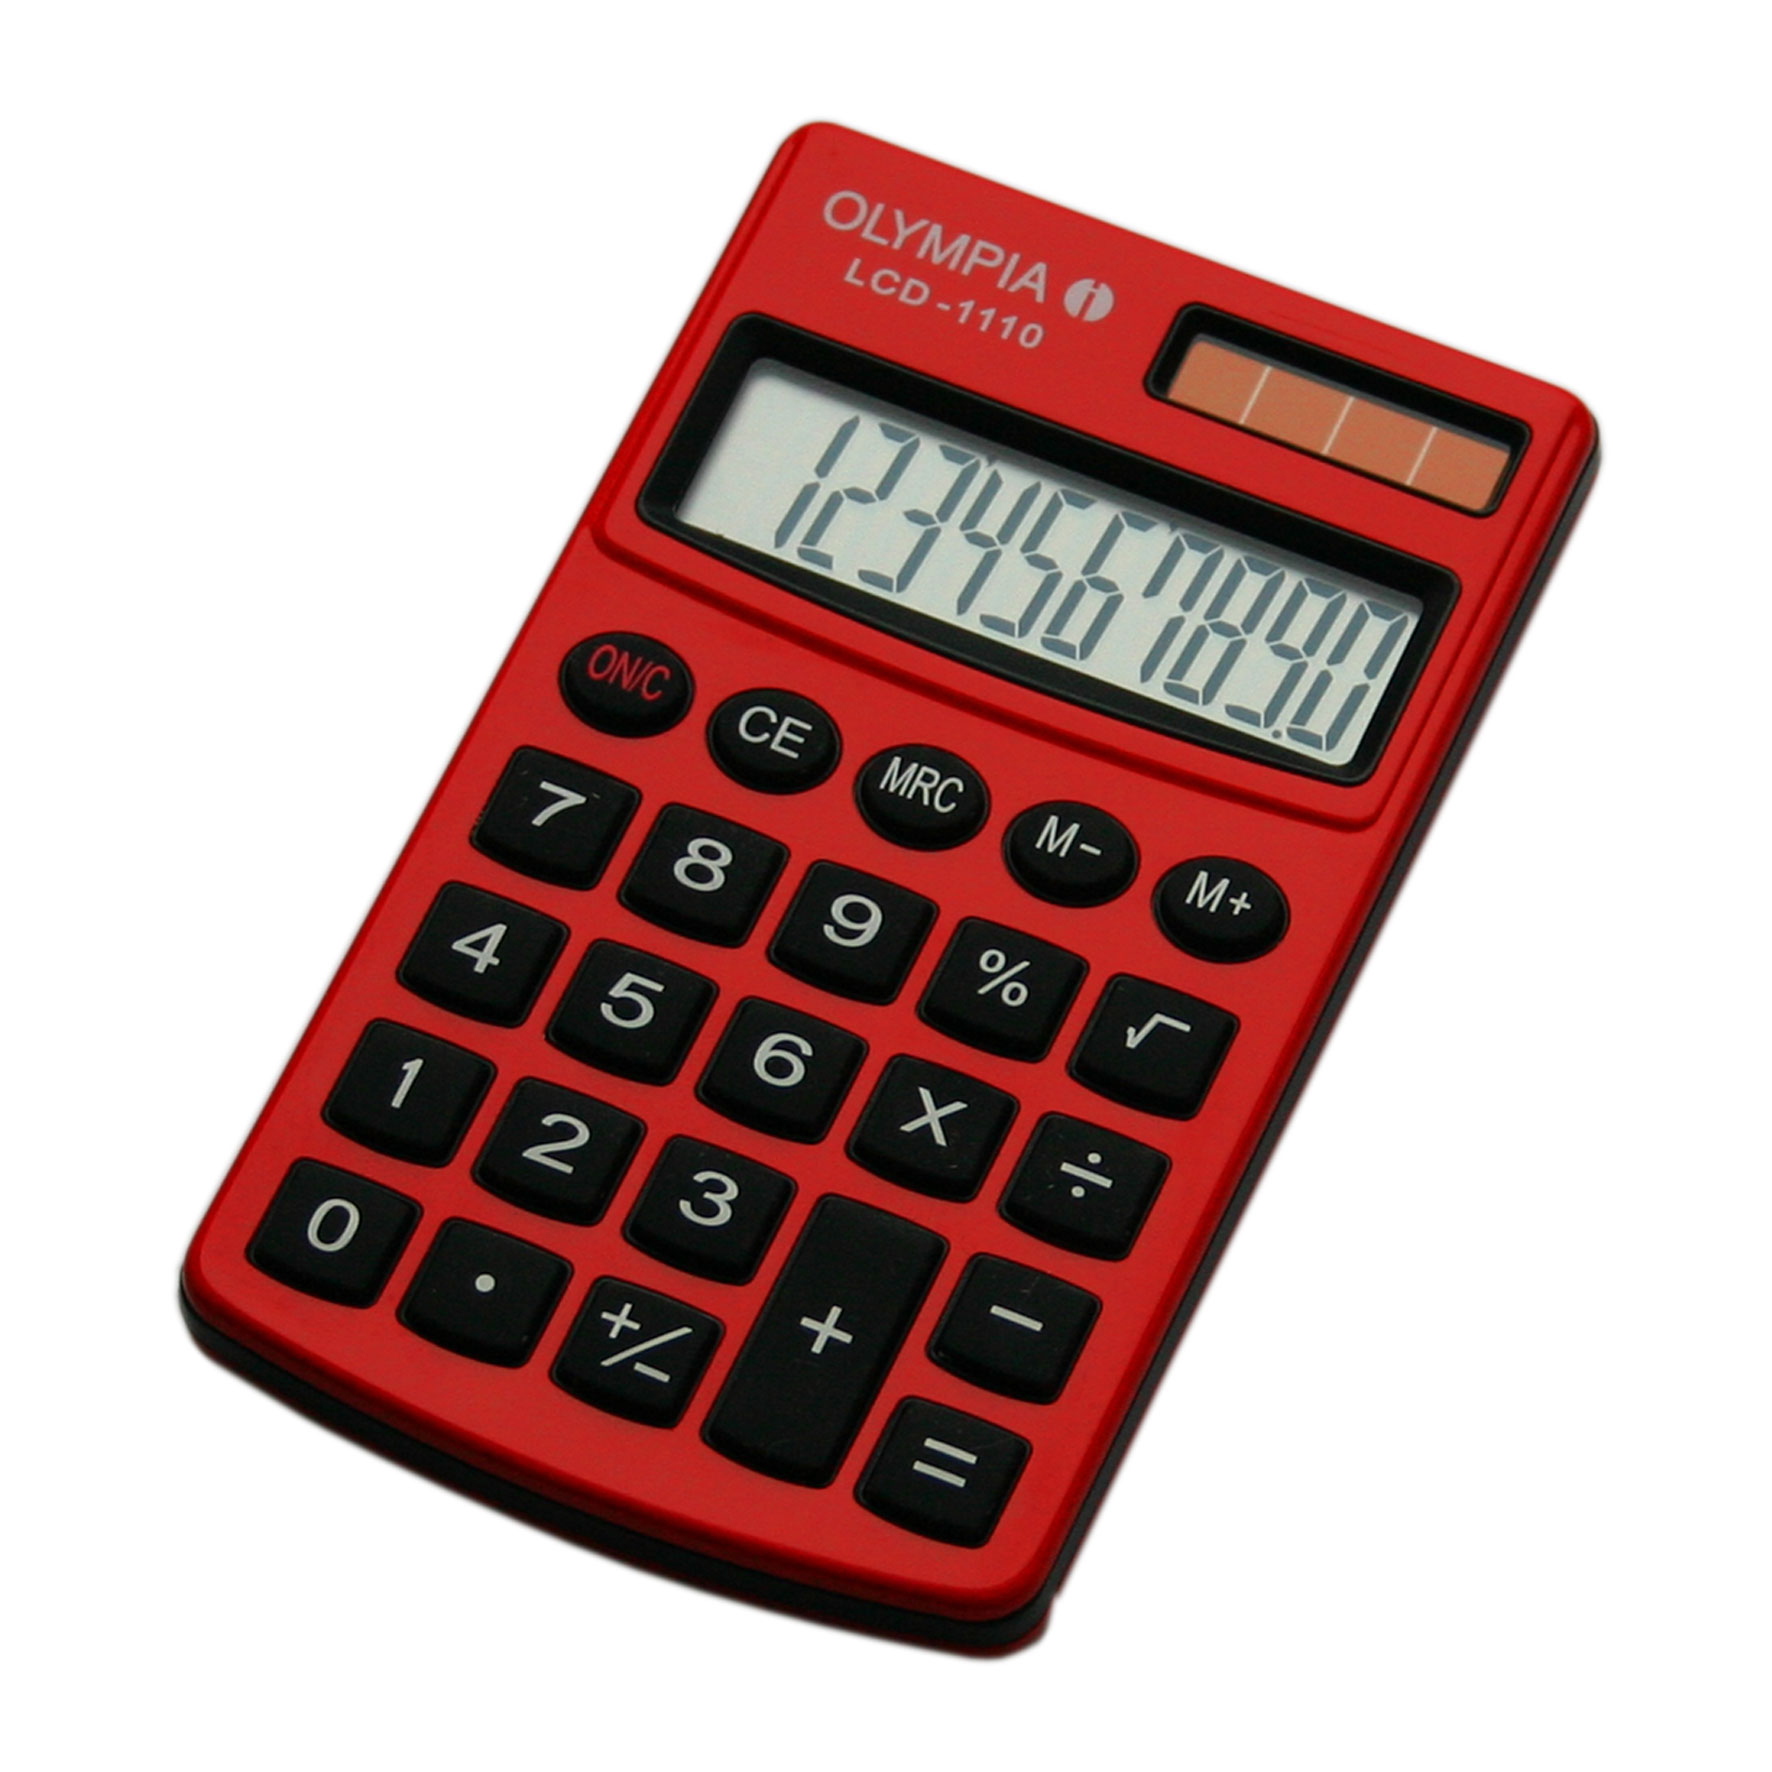 Olympia LCD 1110 - Einfacher Taschenrechner - 10-stelliges Display -rot